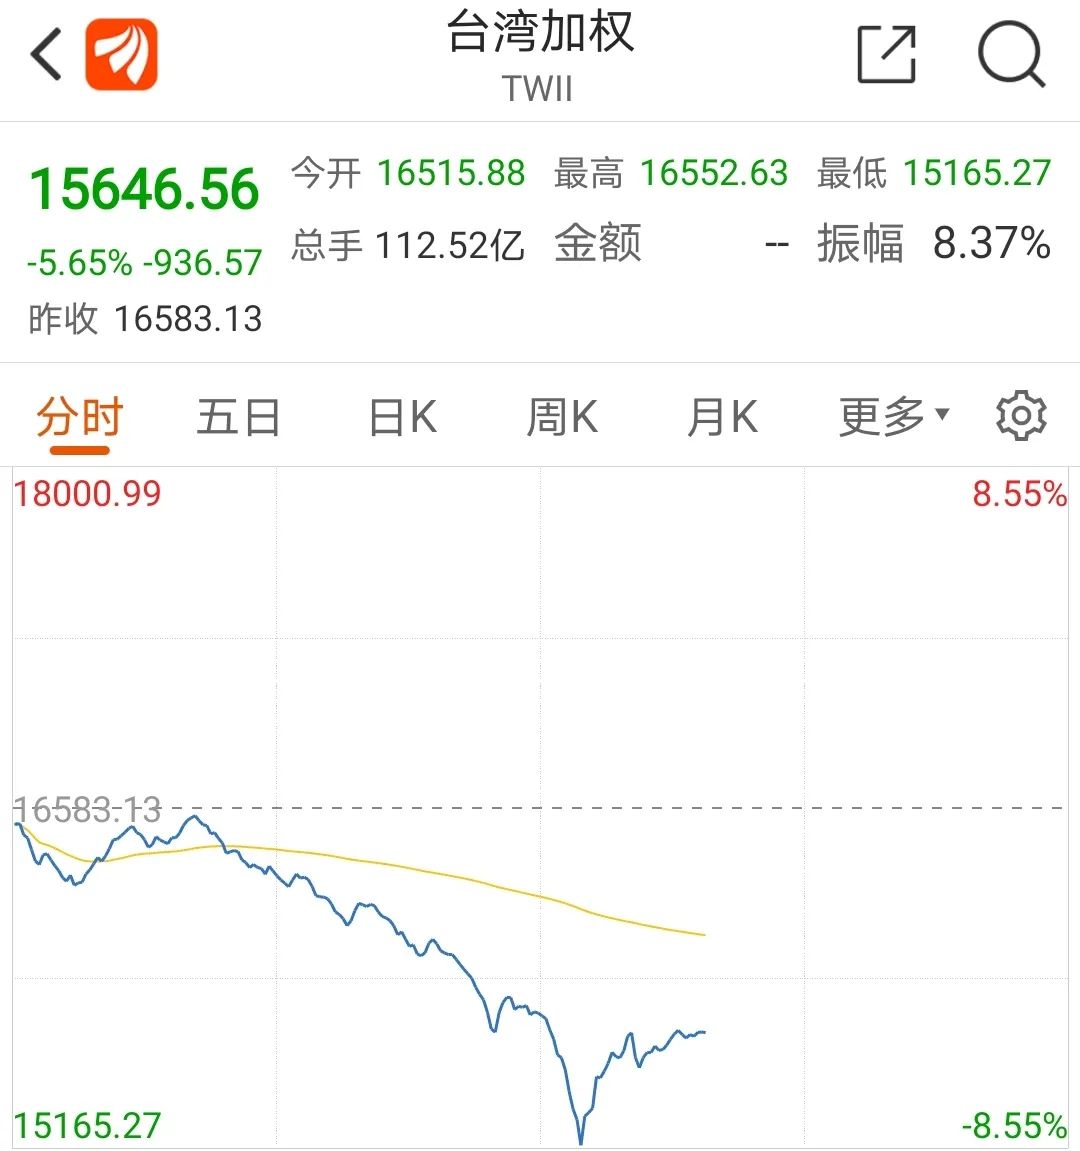 股票指数介绍(台湾股票指数)
